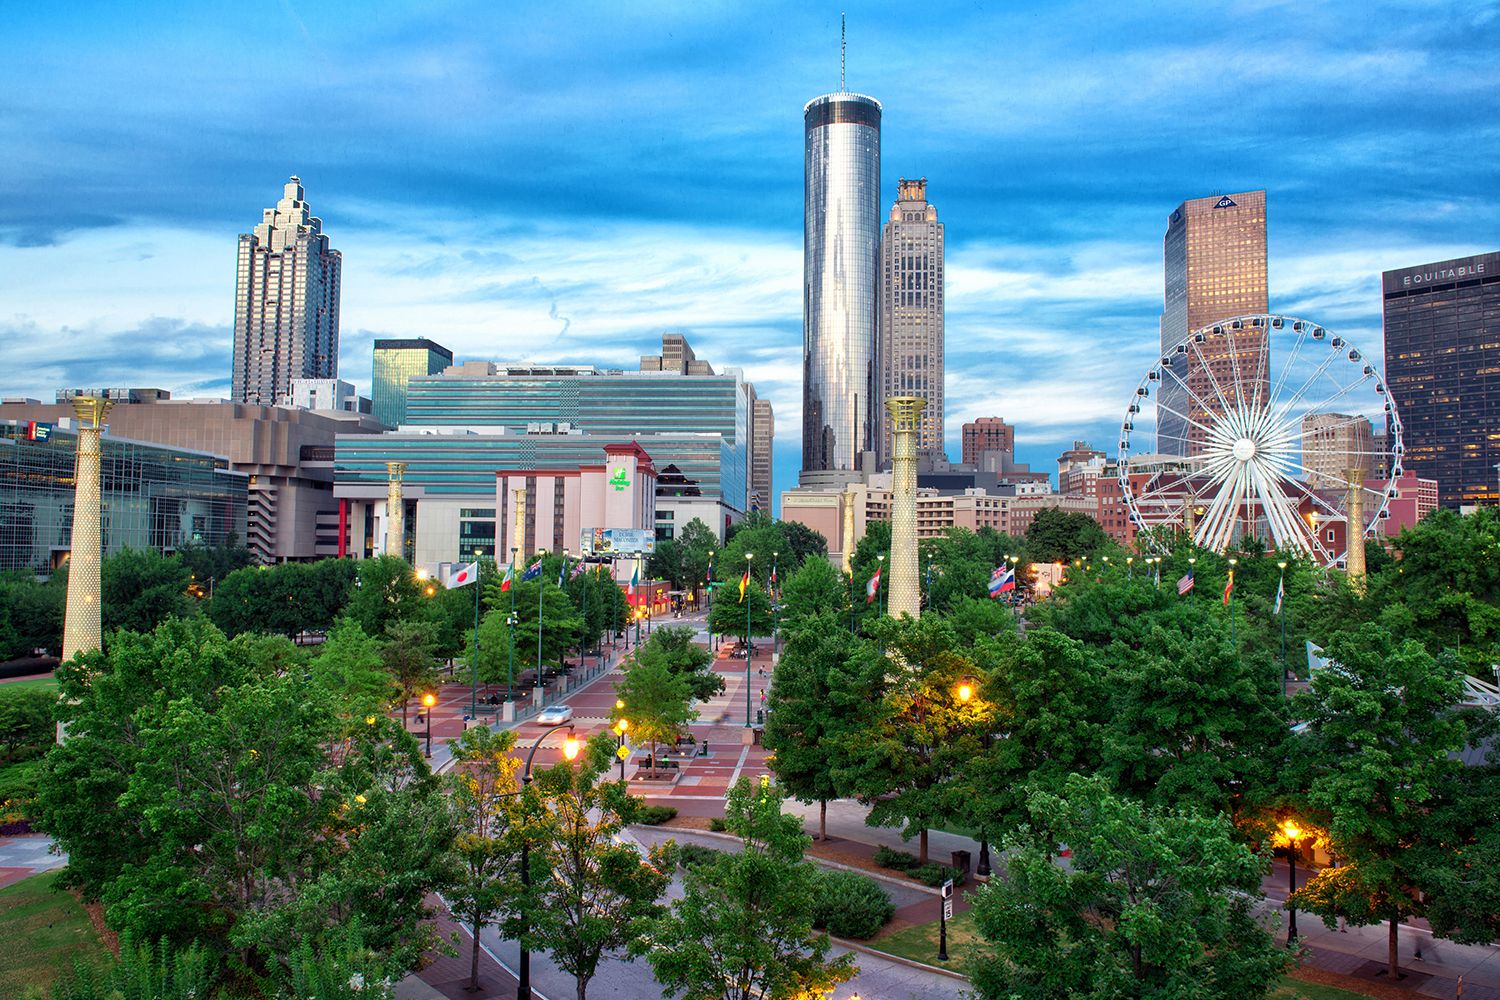 The city of Atlanta